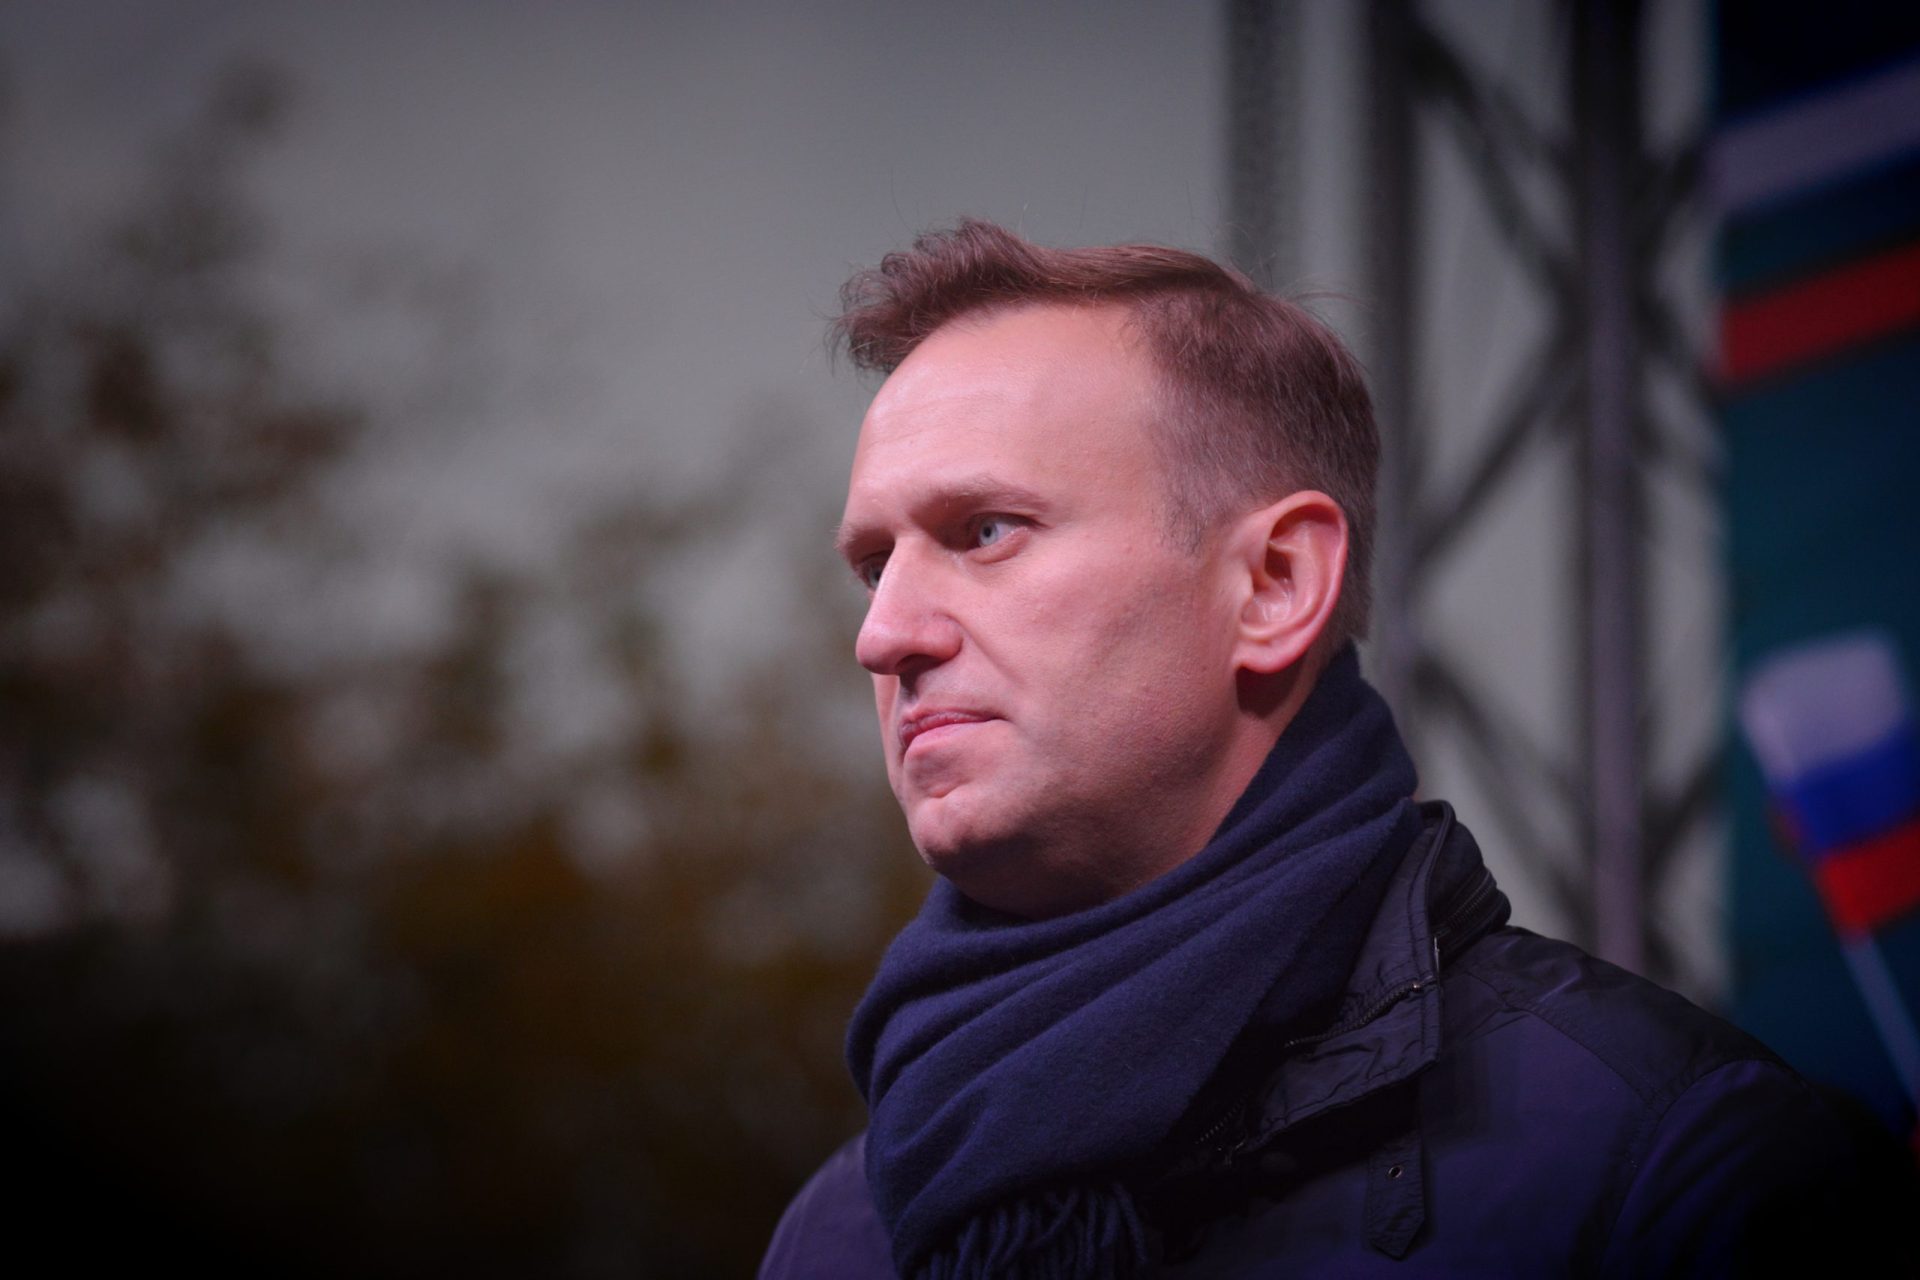 Navalny queixa-se de “fortes dores nas costas” e não sente uma perna, revelou advogada